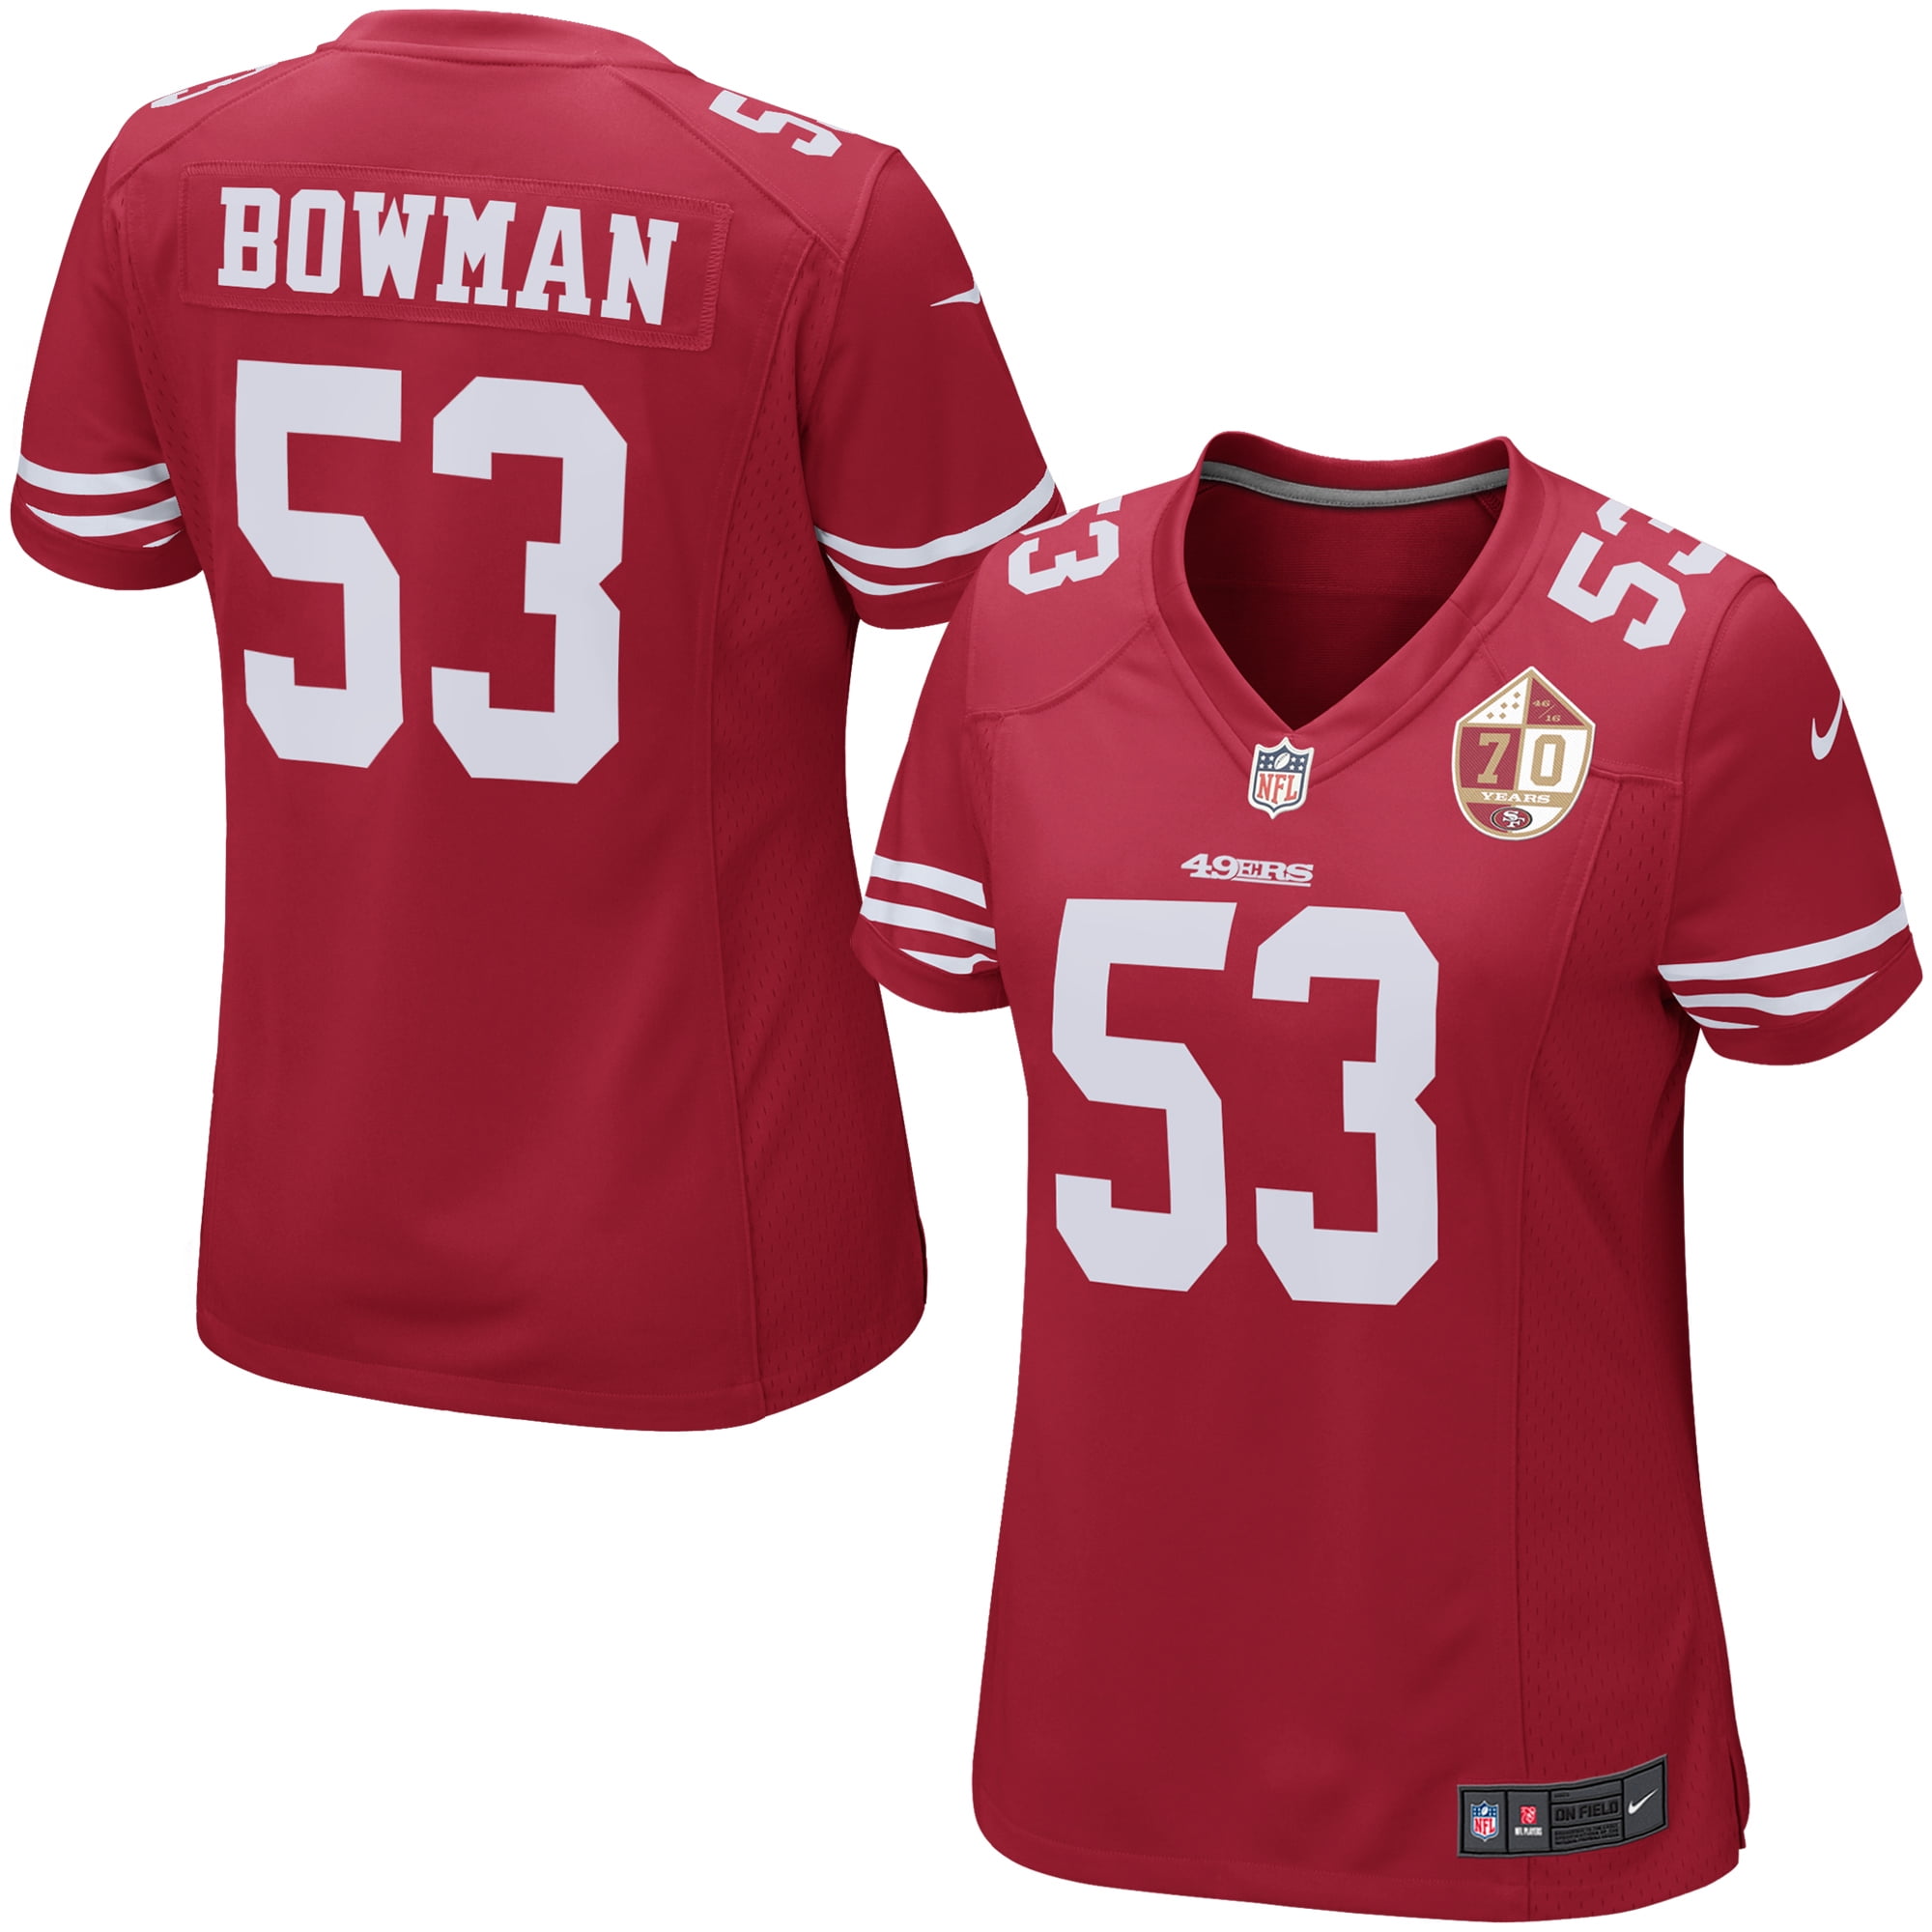 49ers bowman jersey